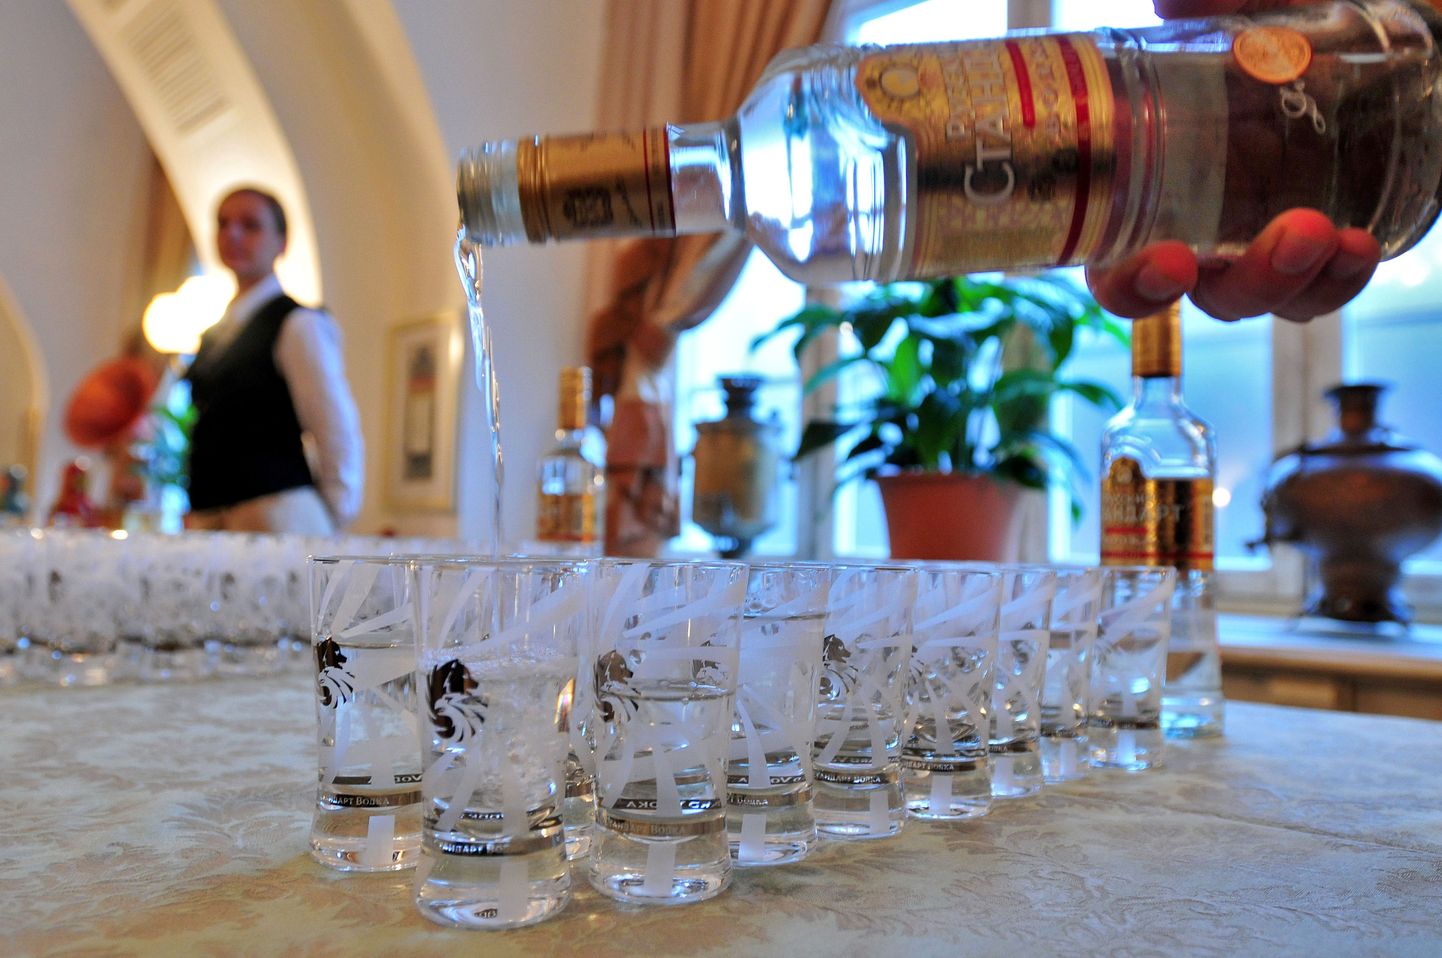 Venemaa tuntud kaubamärki Russian Standardi viina Sotši olümpiakülas juua ei tohi.